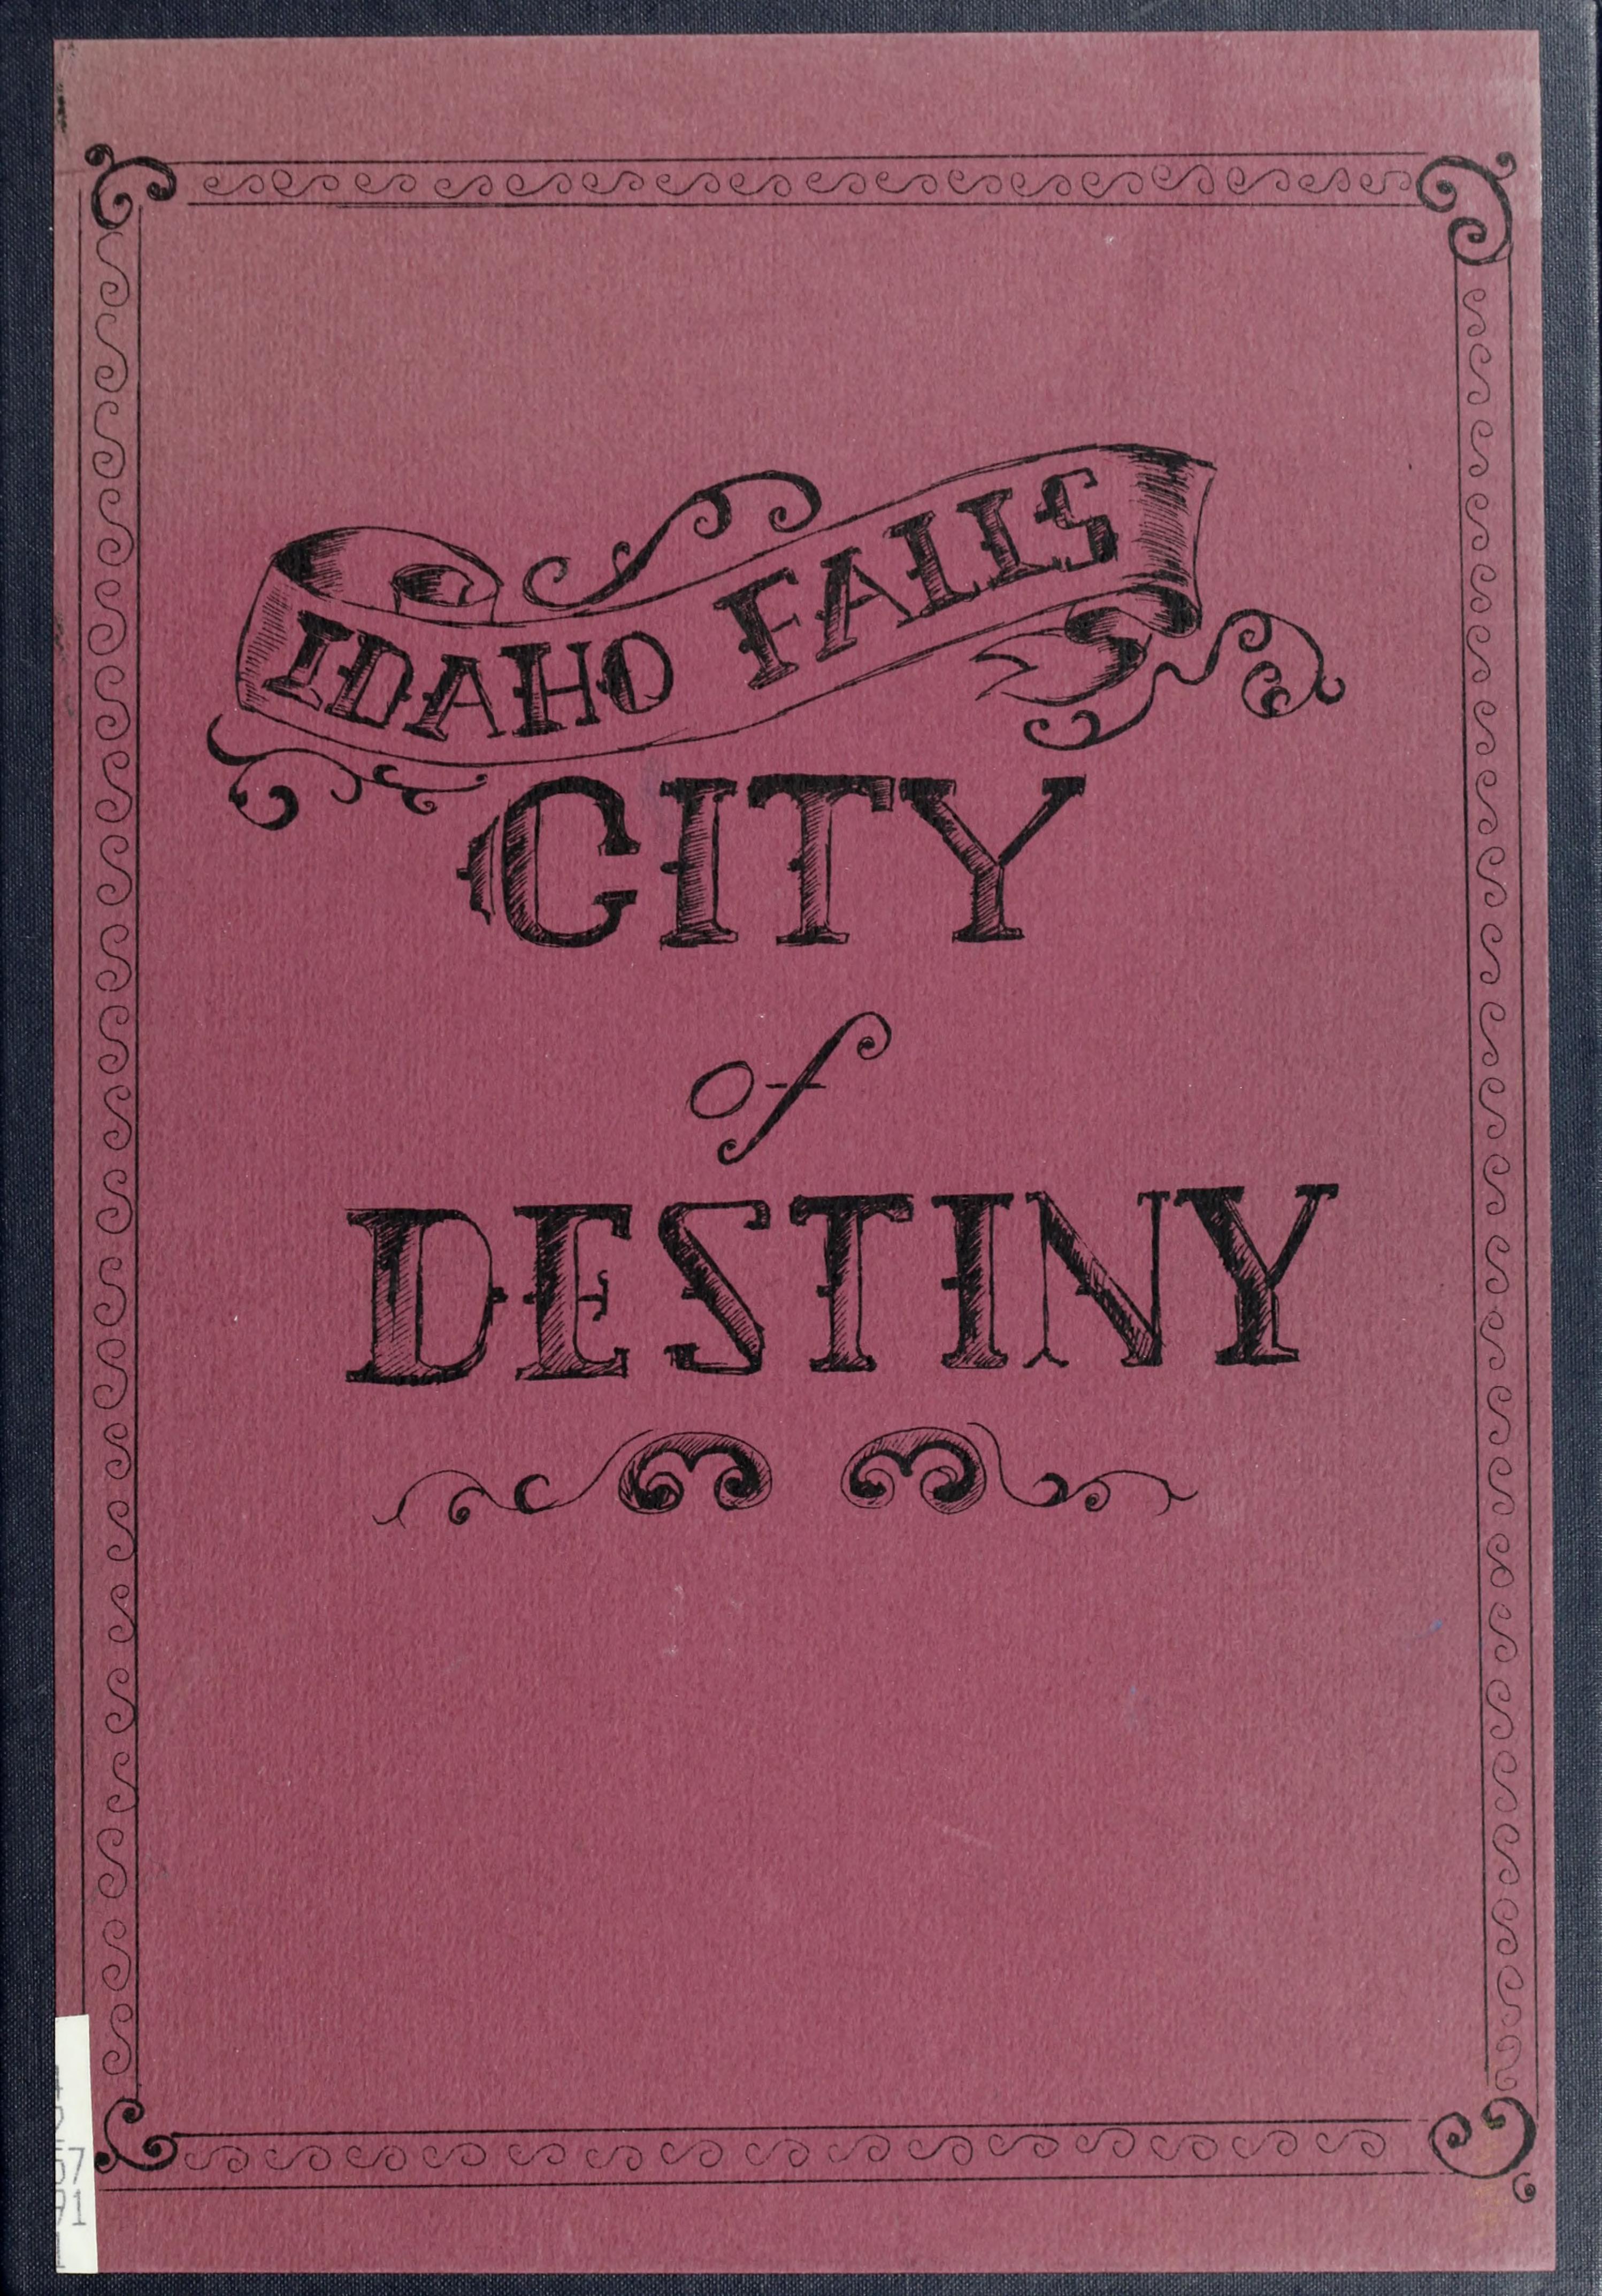 Idaho Falls, city of destiny (book cover)